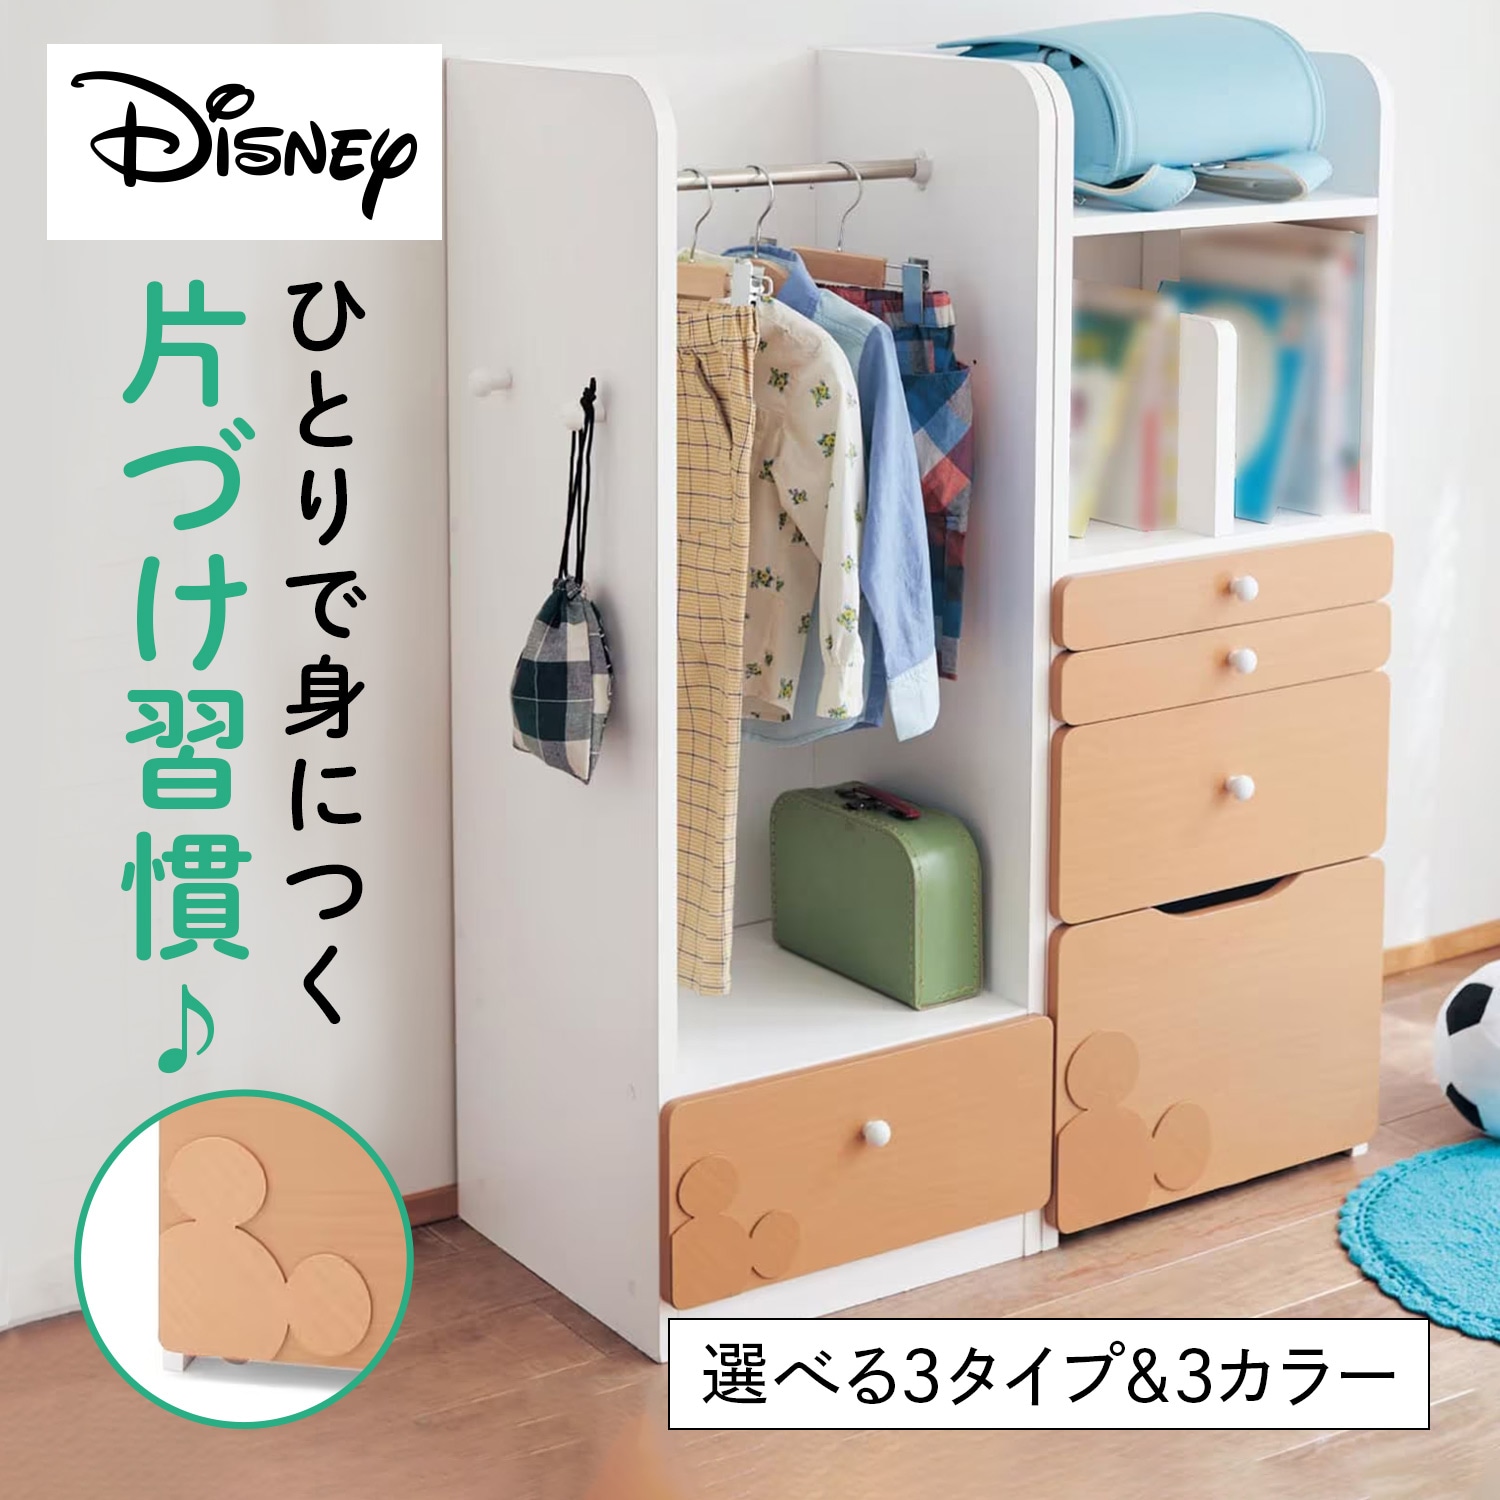 【ディズニー/Disney】キッズ収納ラック「ミッキーモチーフ」画像